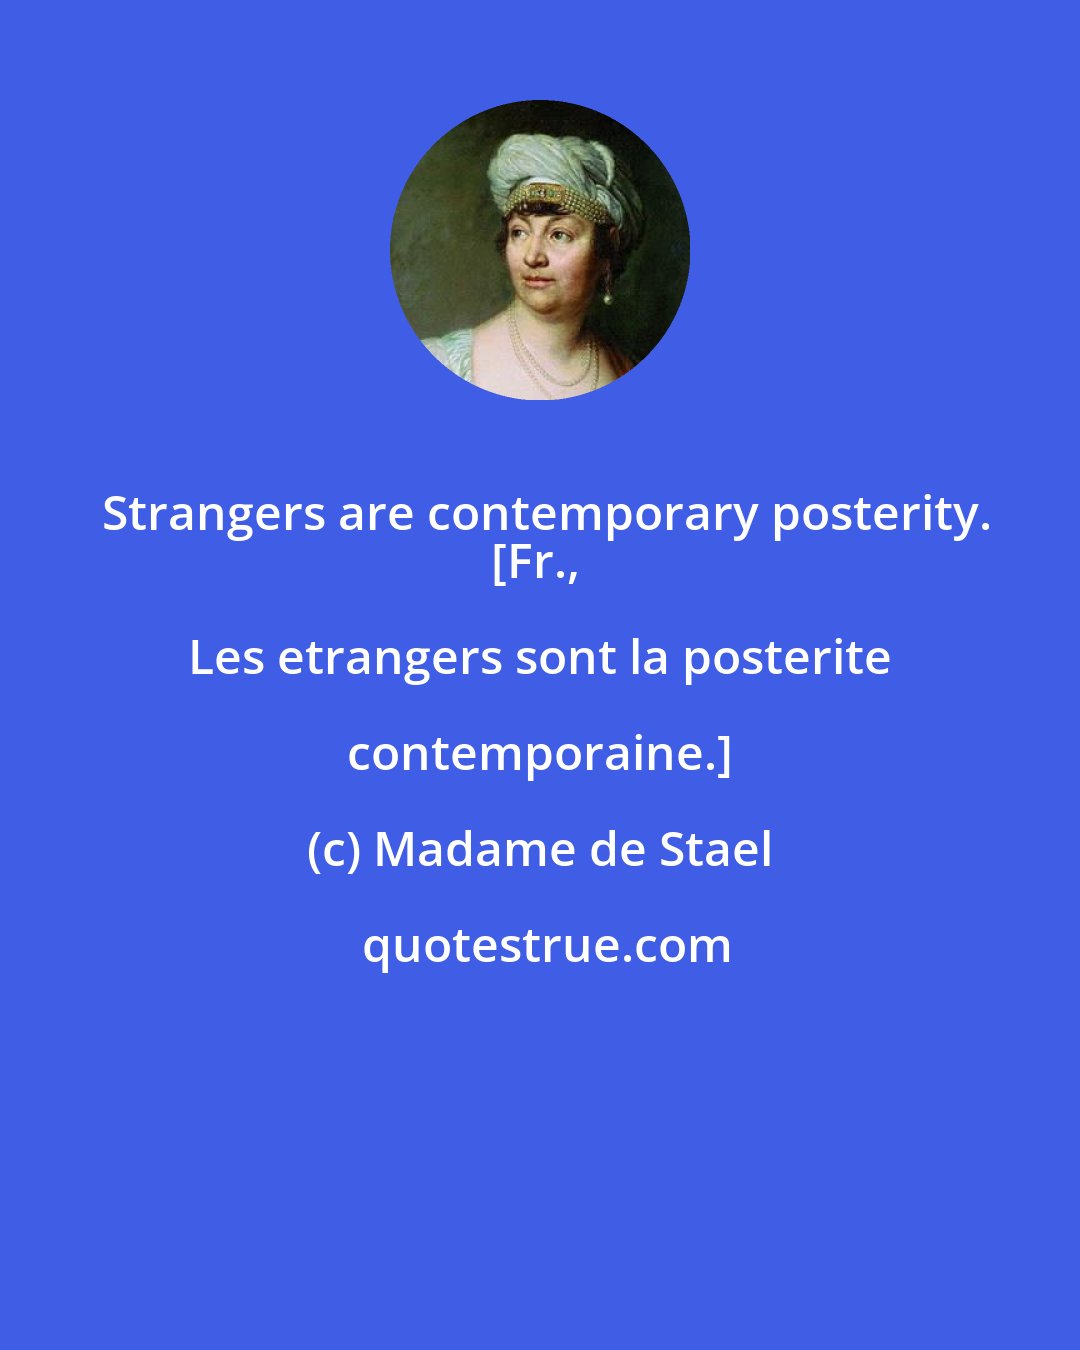 Madame de Stael: Strangers are contemporary posterity.
[Fr., Les etrangers sont la posterite contemporaine.]